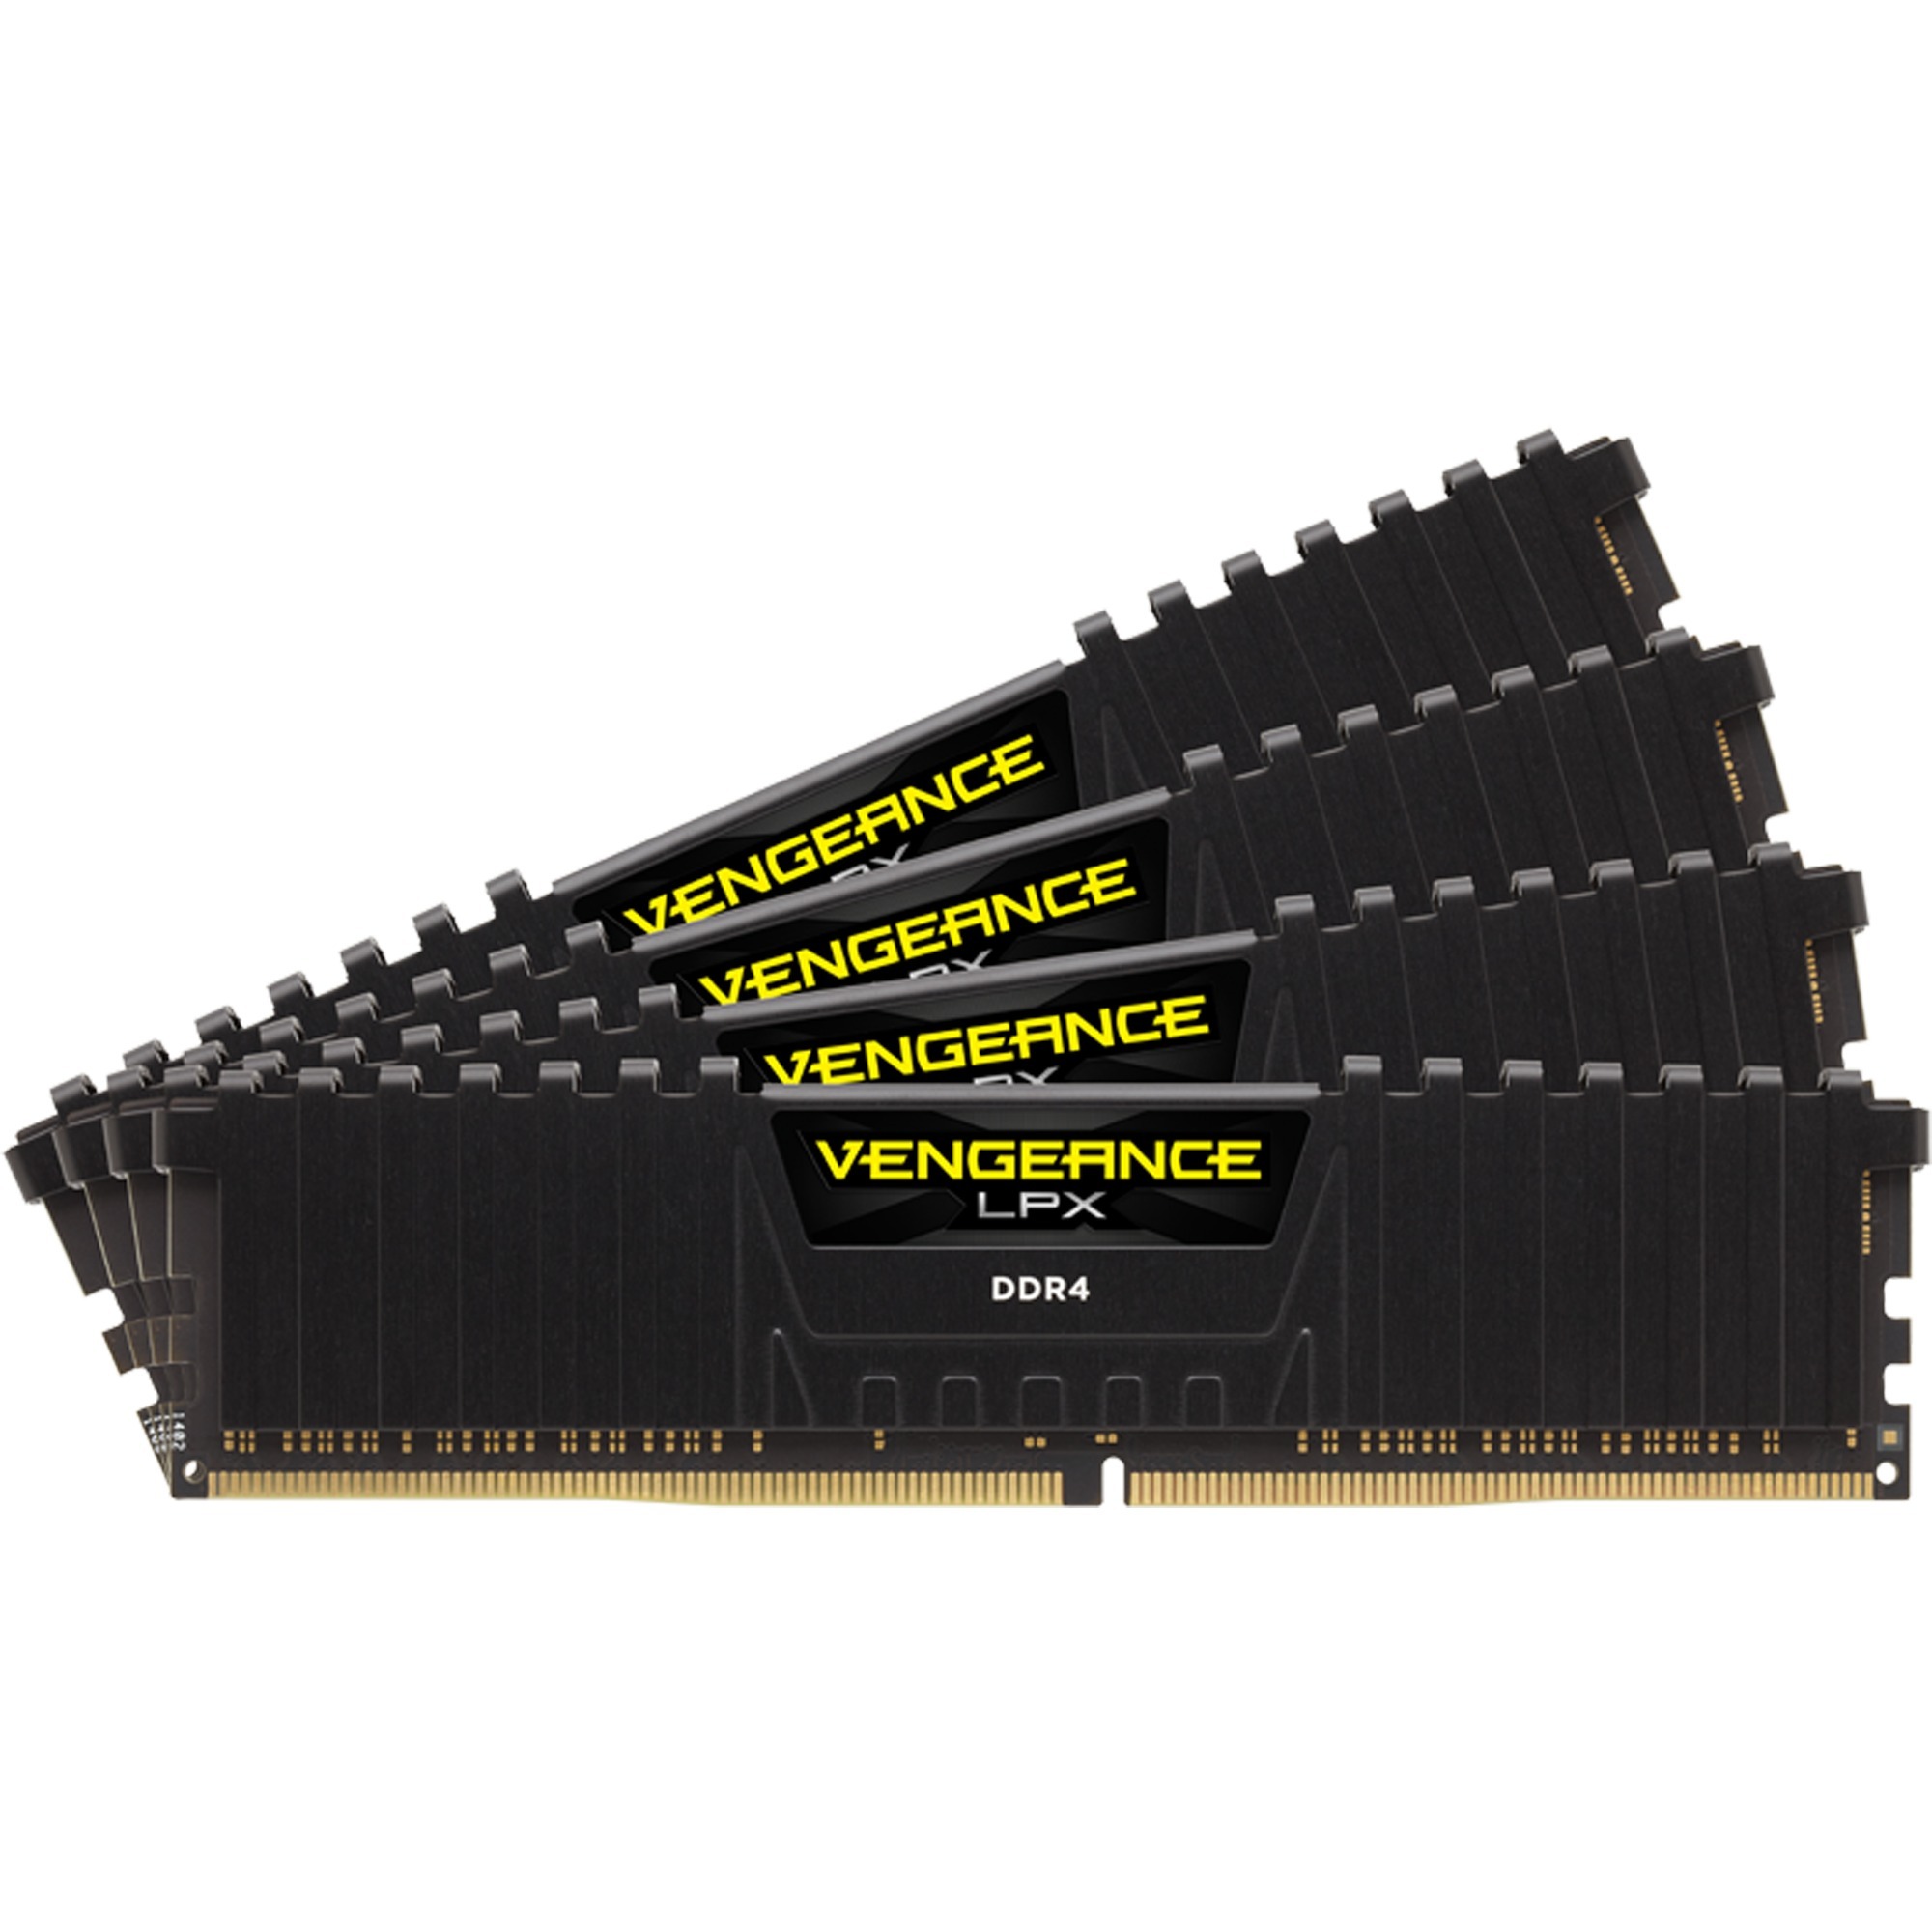 Vengeance LPX 64GB DDR4-2666 moduł pamięci 2666 Mhz, Pamięc operacyjna